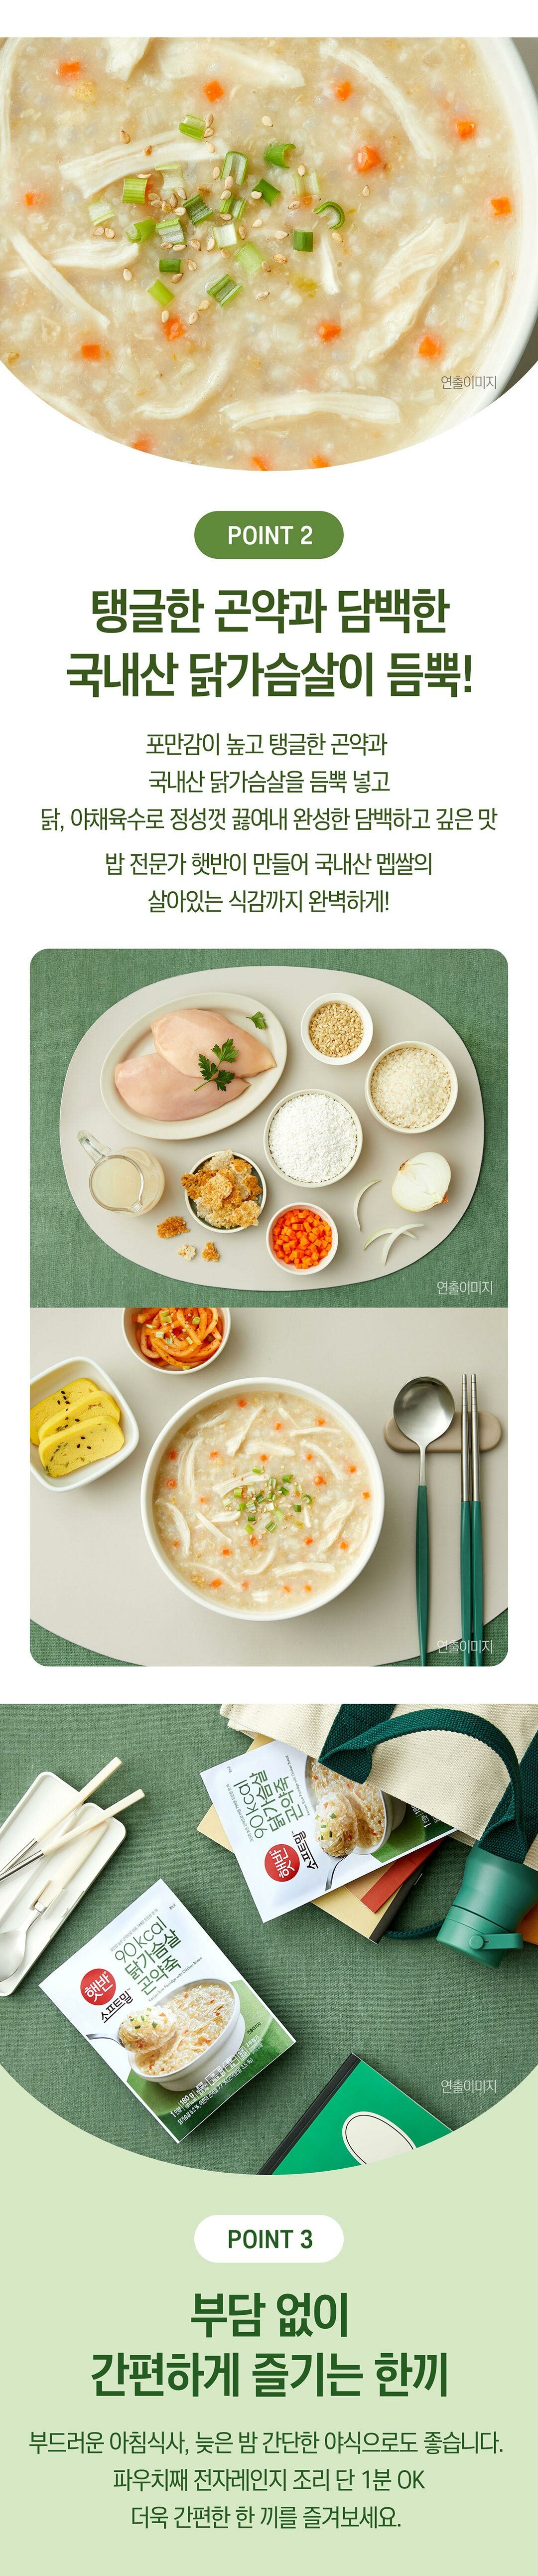 햇반소프트밀-닭가슴살-곤약죽-180g-1000140154987